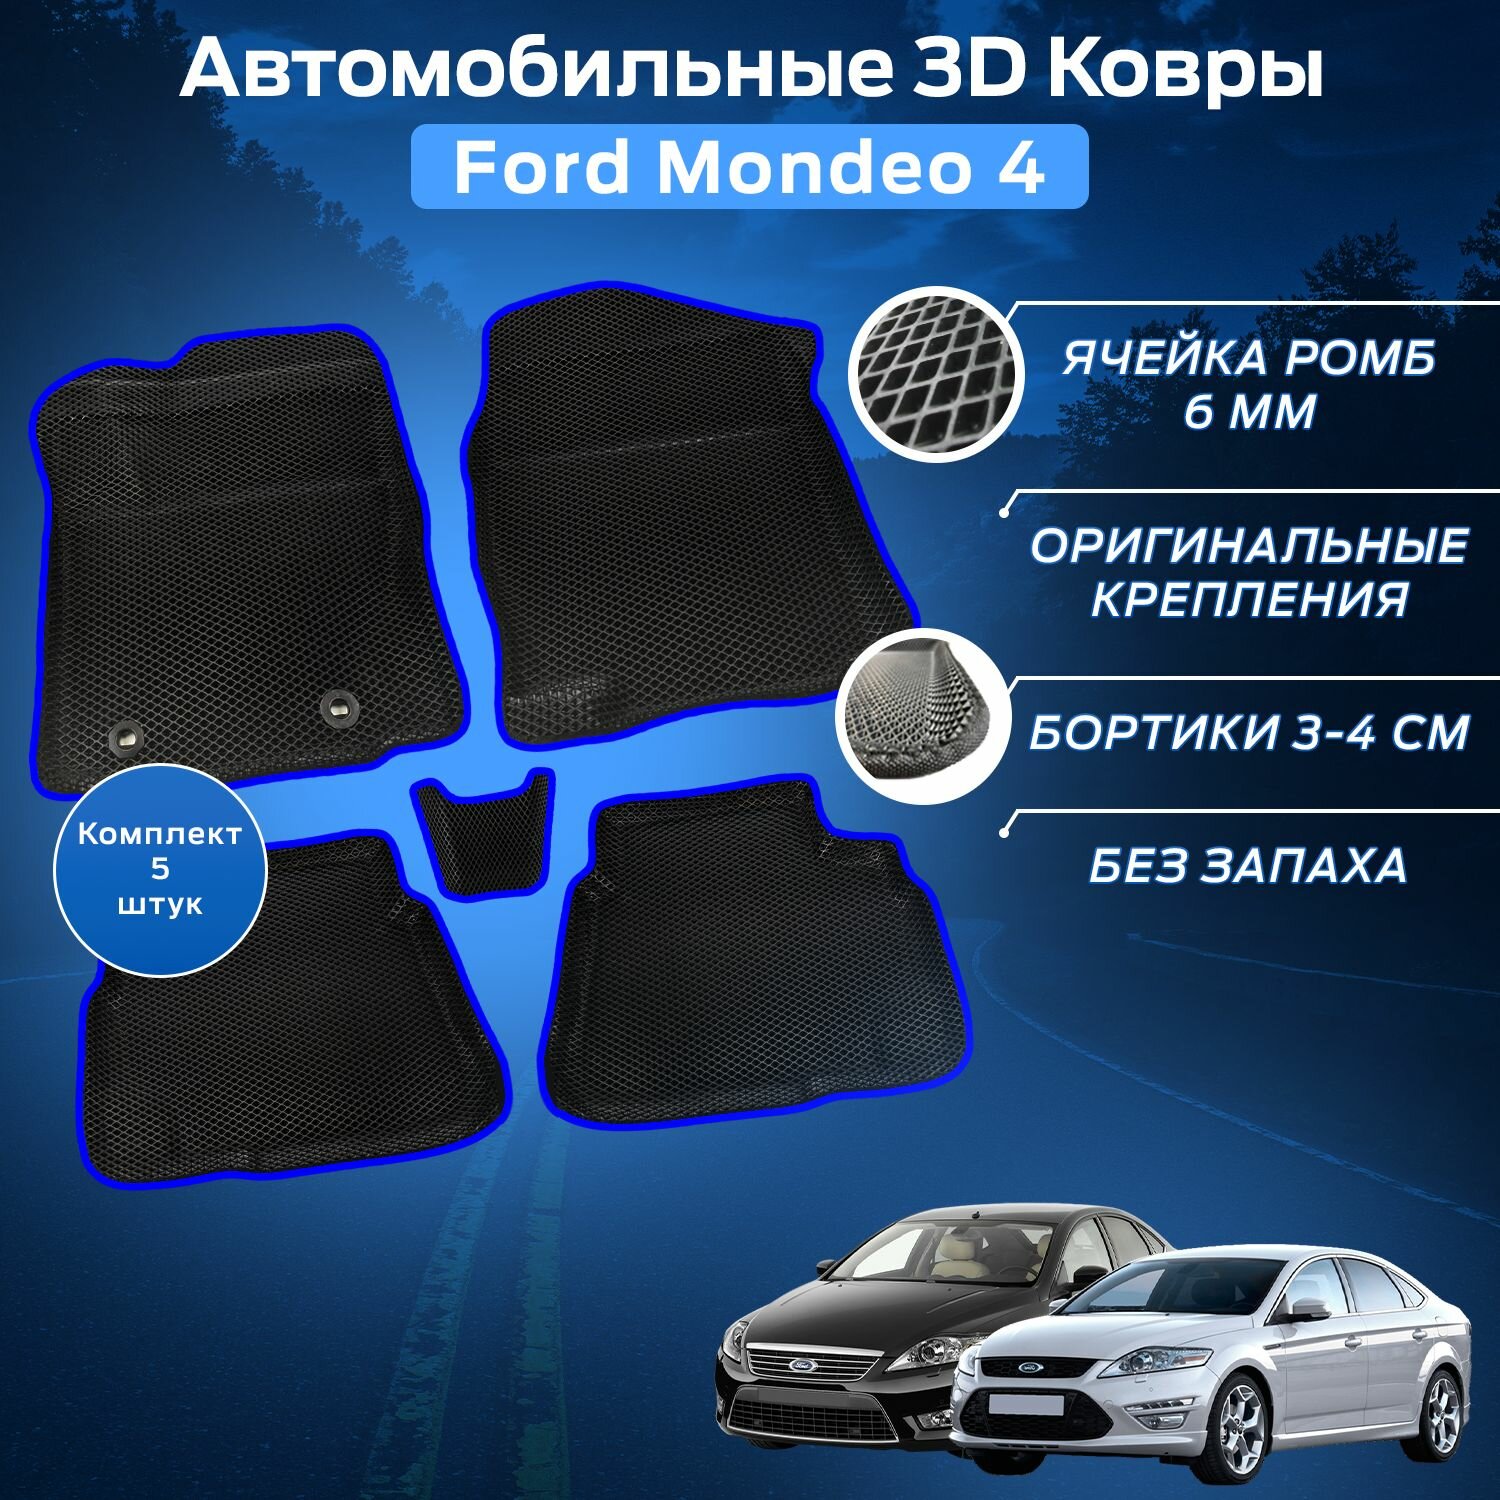 Пресс-EVA 3Д Ковры Форд Мондео 4 (Ева, эва, коврики с бортами) Ford Mondeo 4 / Синие